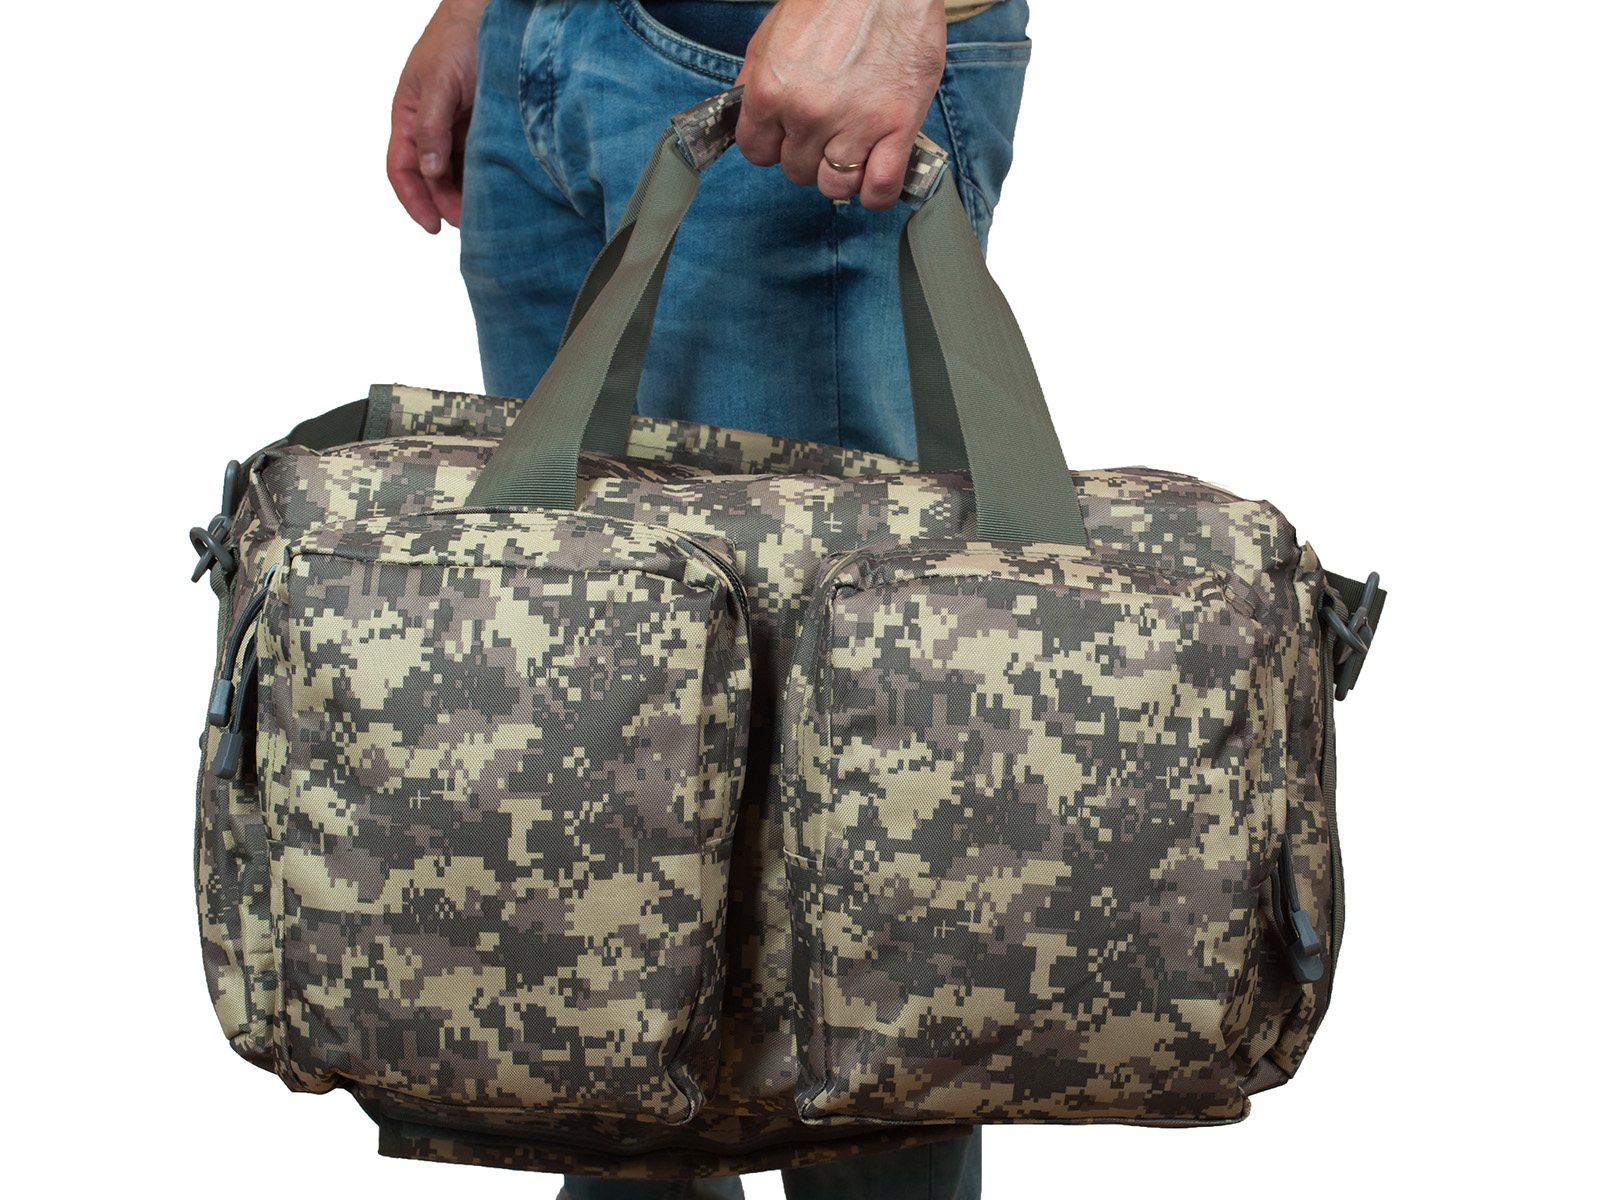 Современная военная сумка-ранец МОРПЕХа 